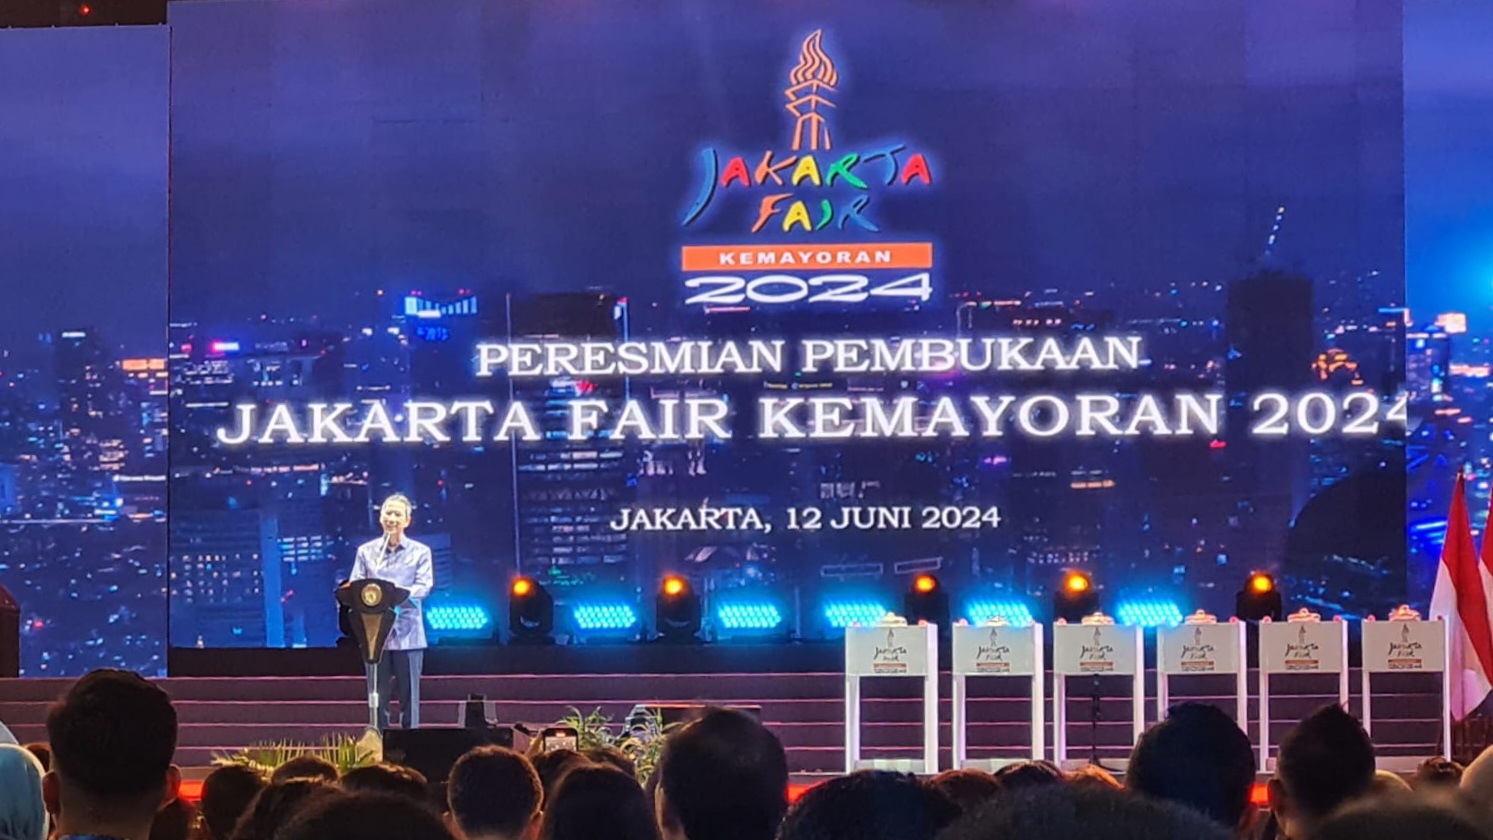 Heru Budi Harap Jakarta Fair Jadi Sarana Promosi Industri Lokal dengan Kualitas Internasional